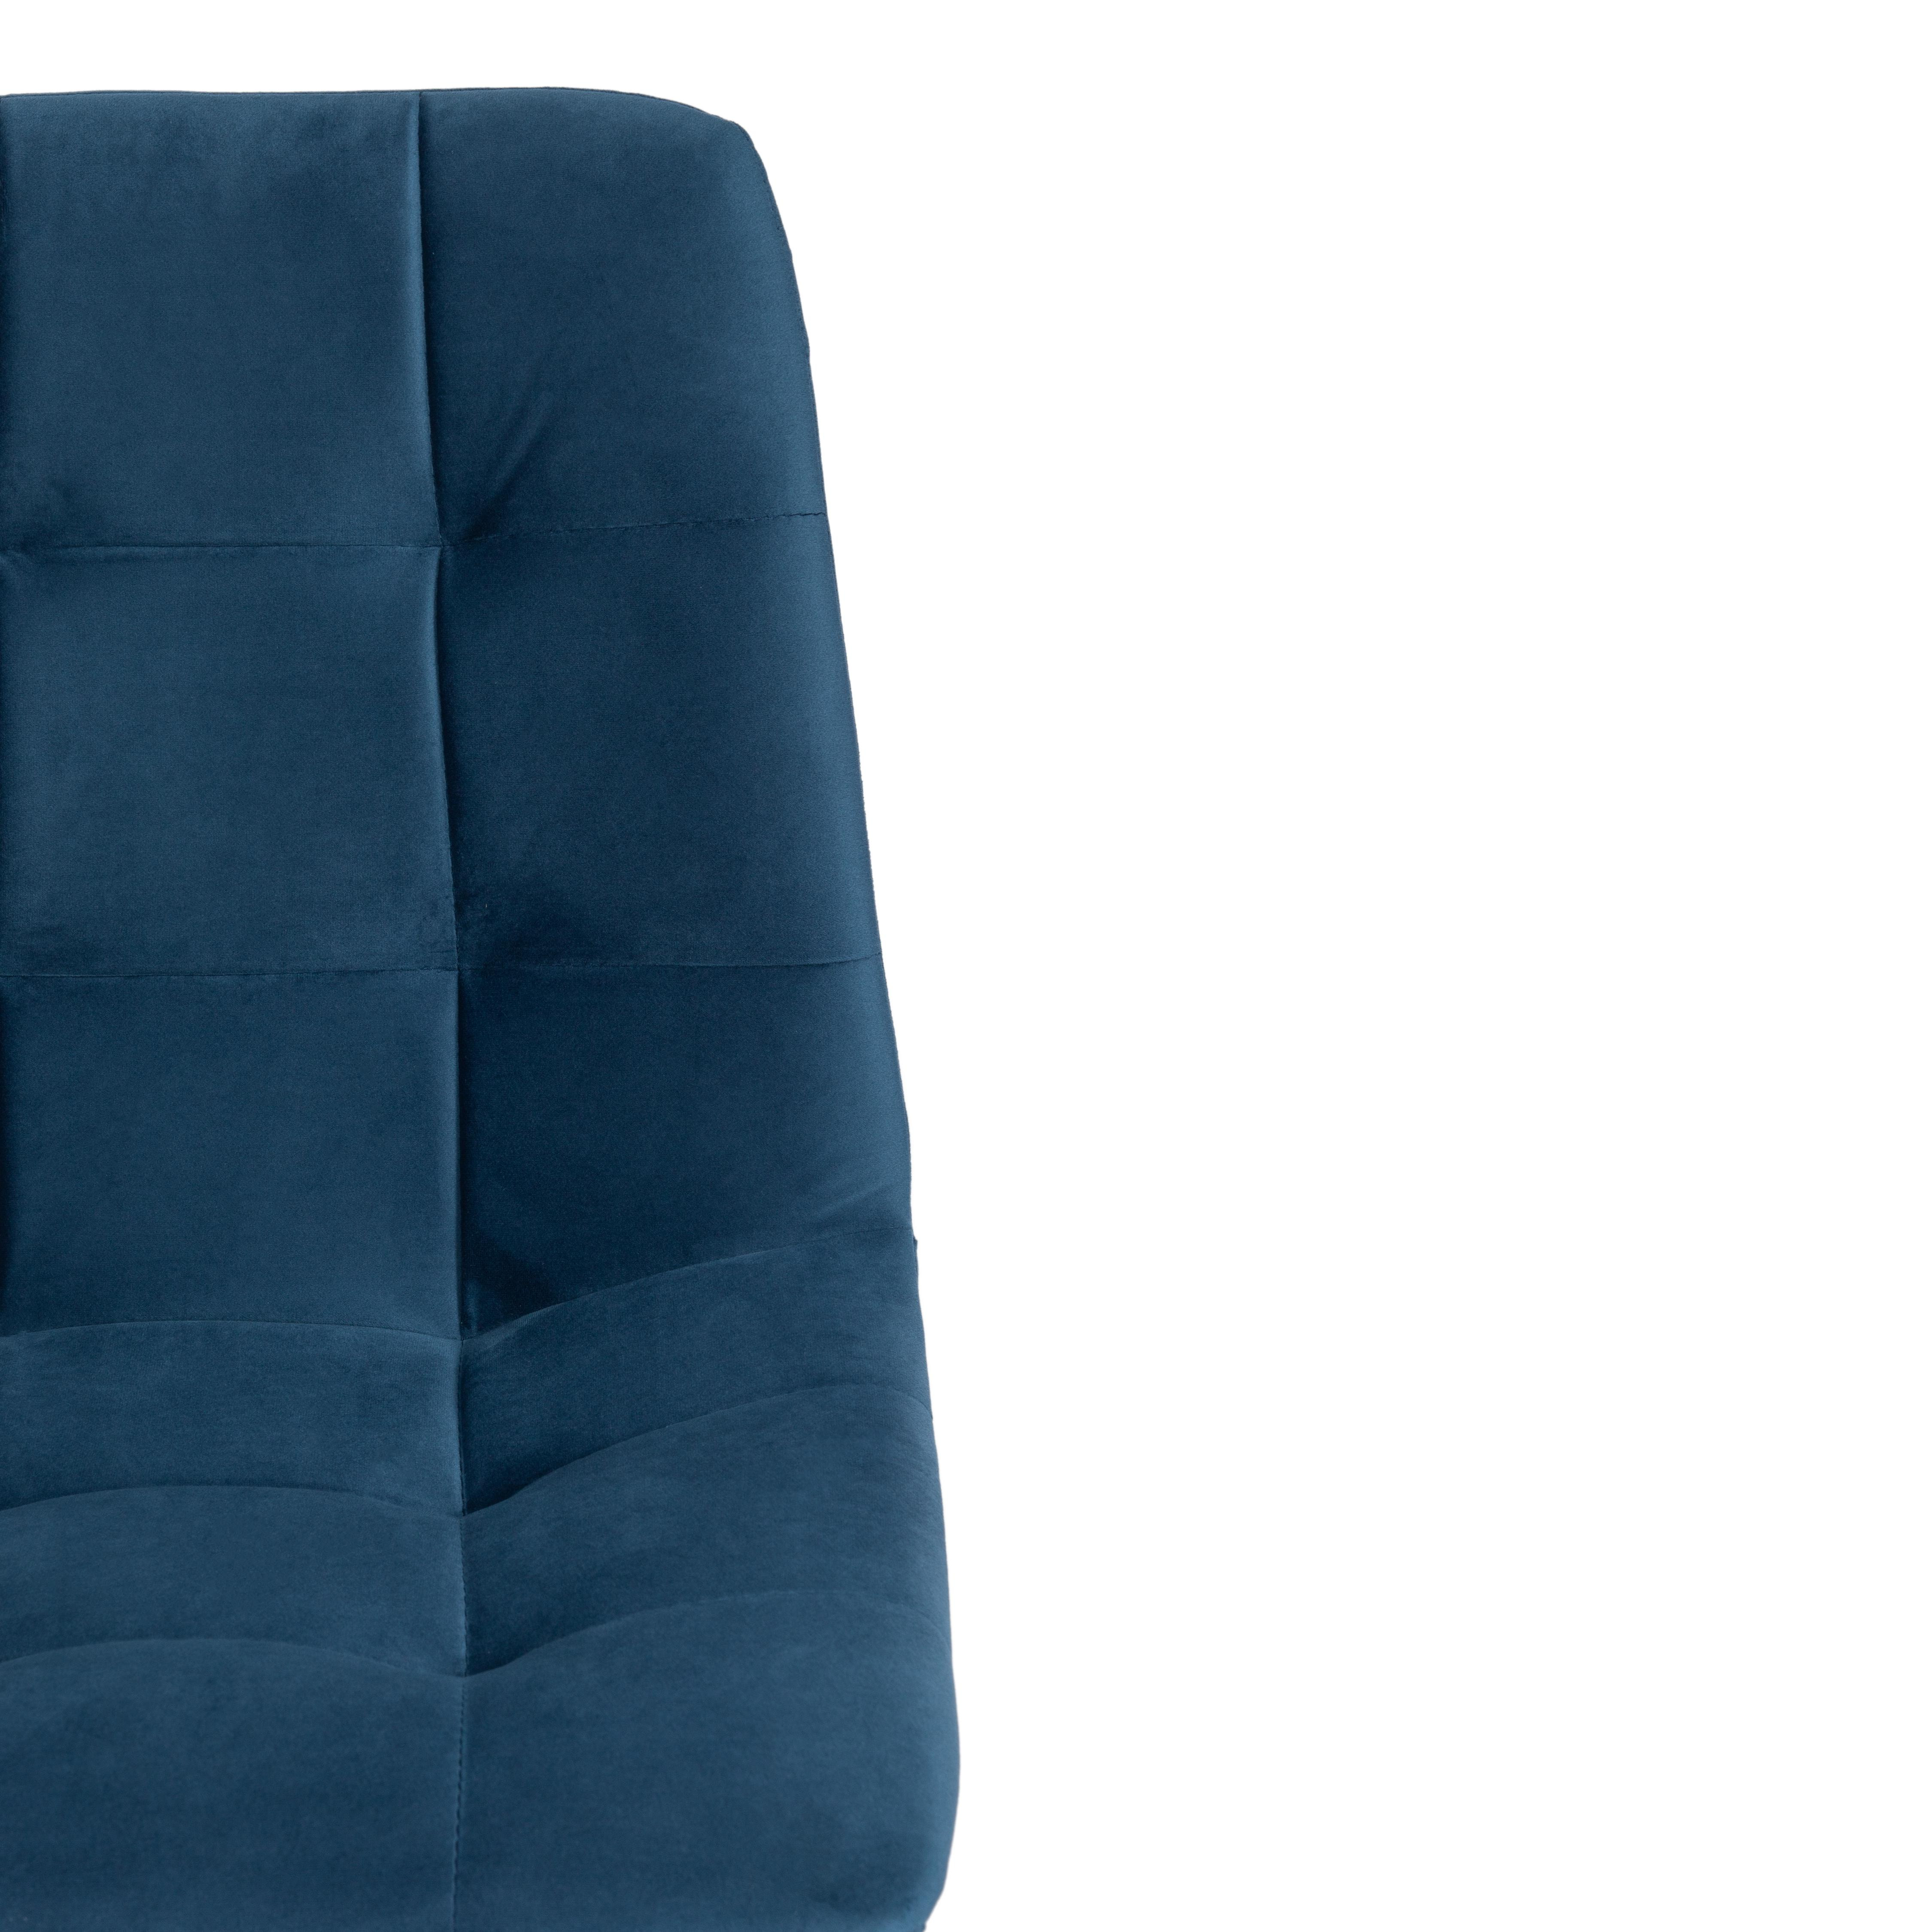 Стул CHILLY (mod. 7095) ткань/металл, 45x53х88 см, высота до сиденья 50 см, синий barkhat 29/черный